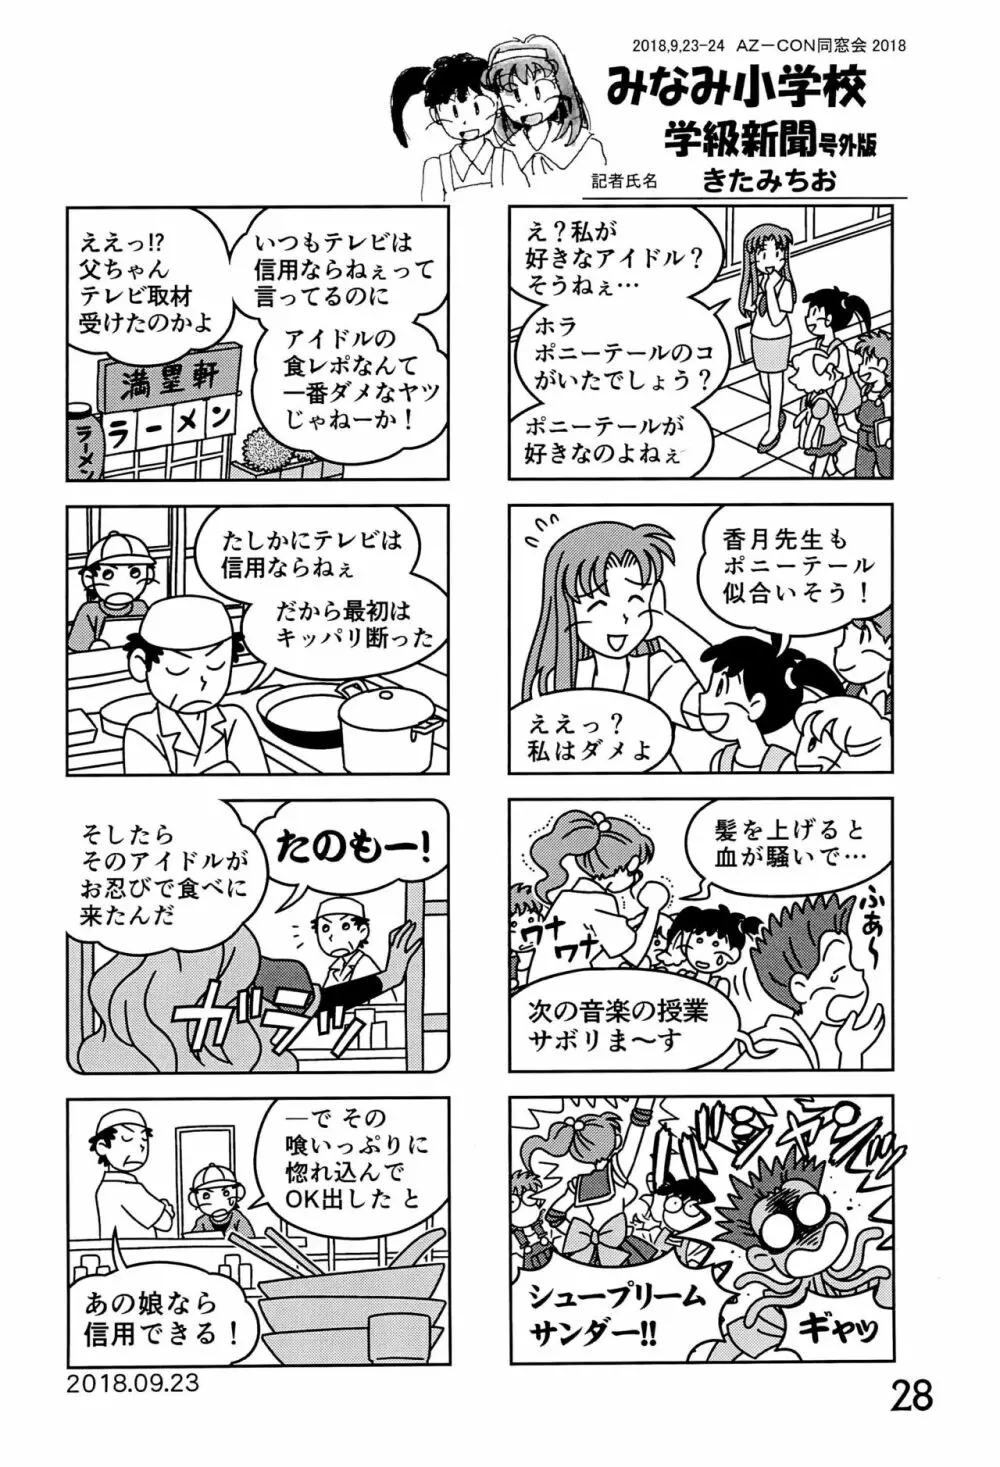 みなみ小学校学級新聞2018+号外版 28ページ